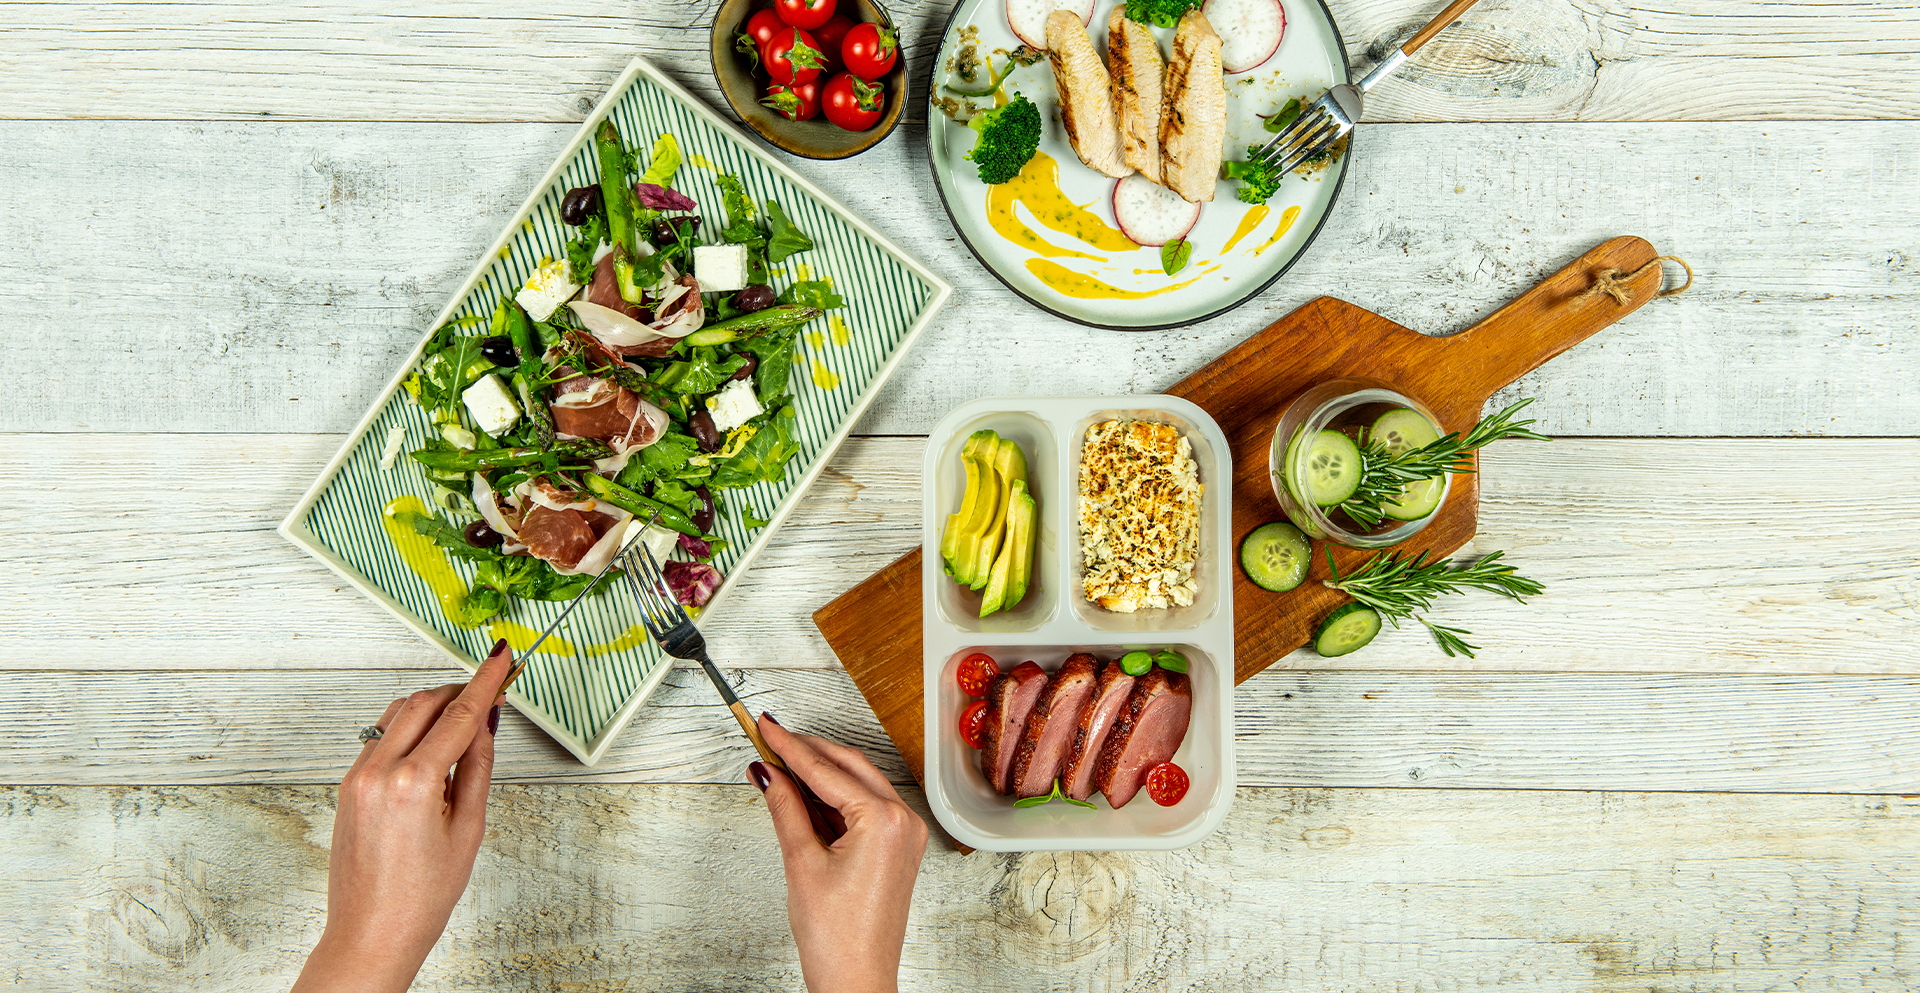 Restaurante și cofetării unde poți să mănânci keto - Nutriblog